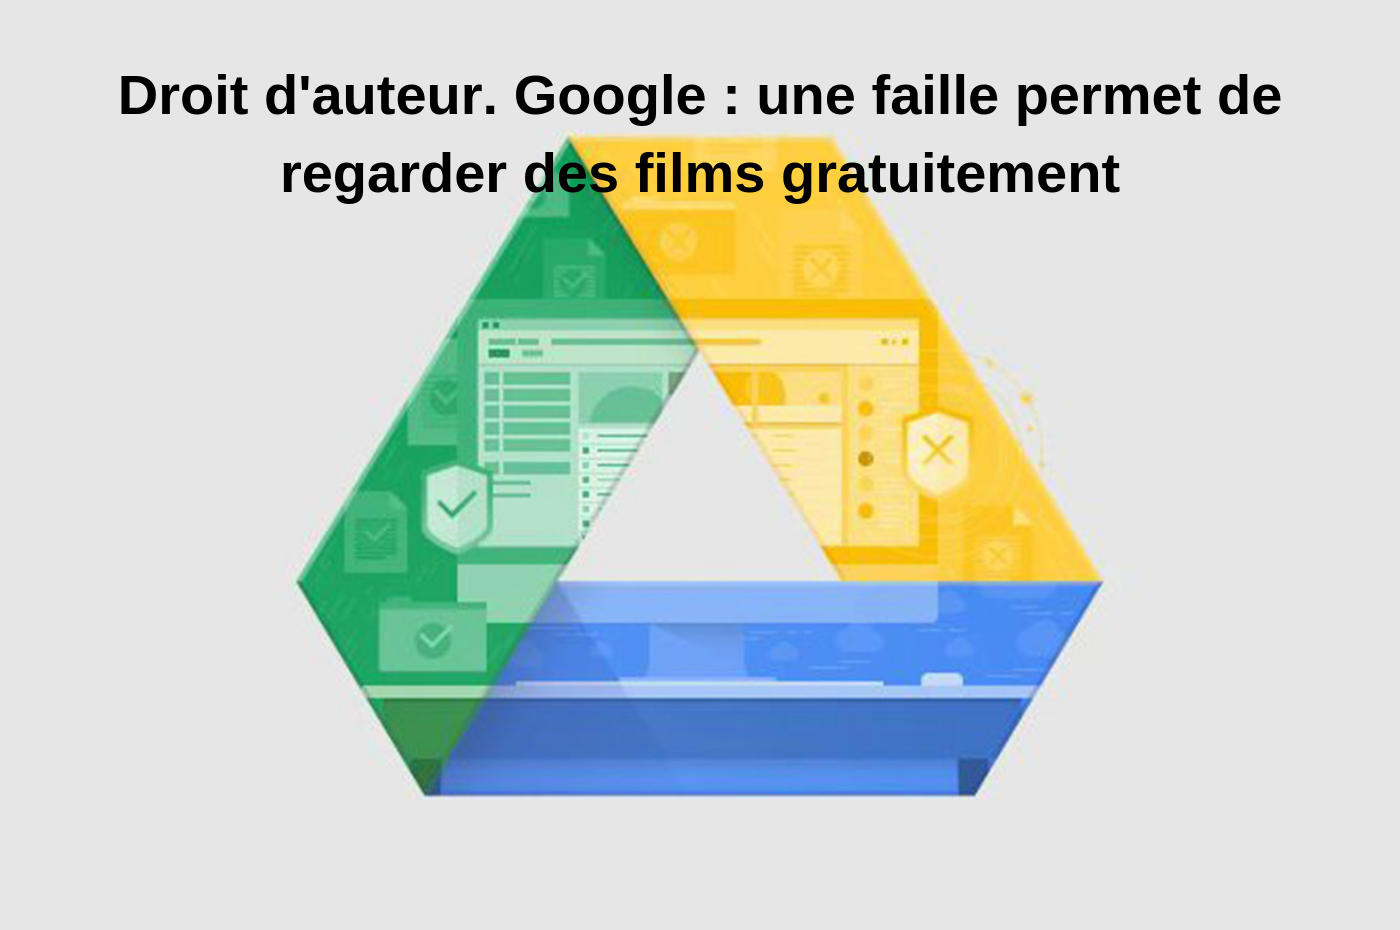 Droit d’auteur. Google : une faille permet de regarder des films gratuitement